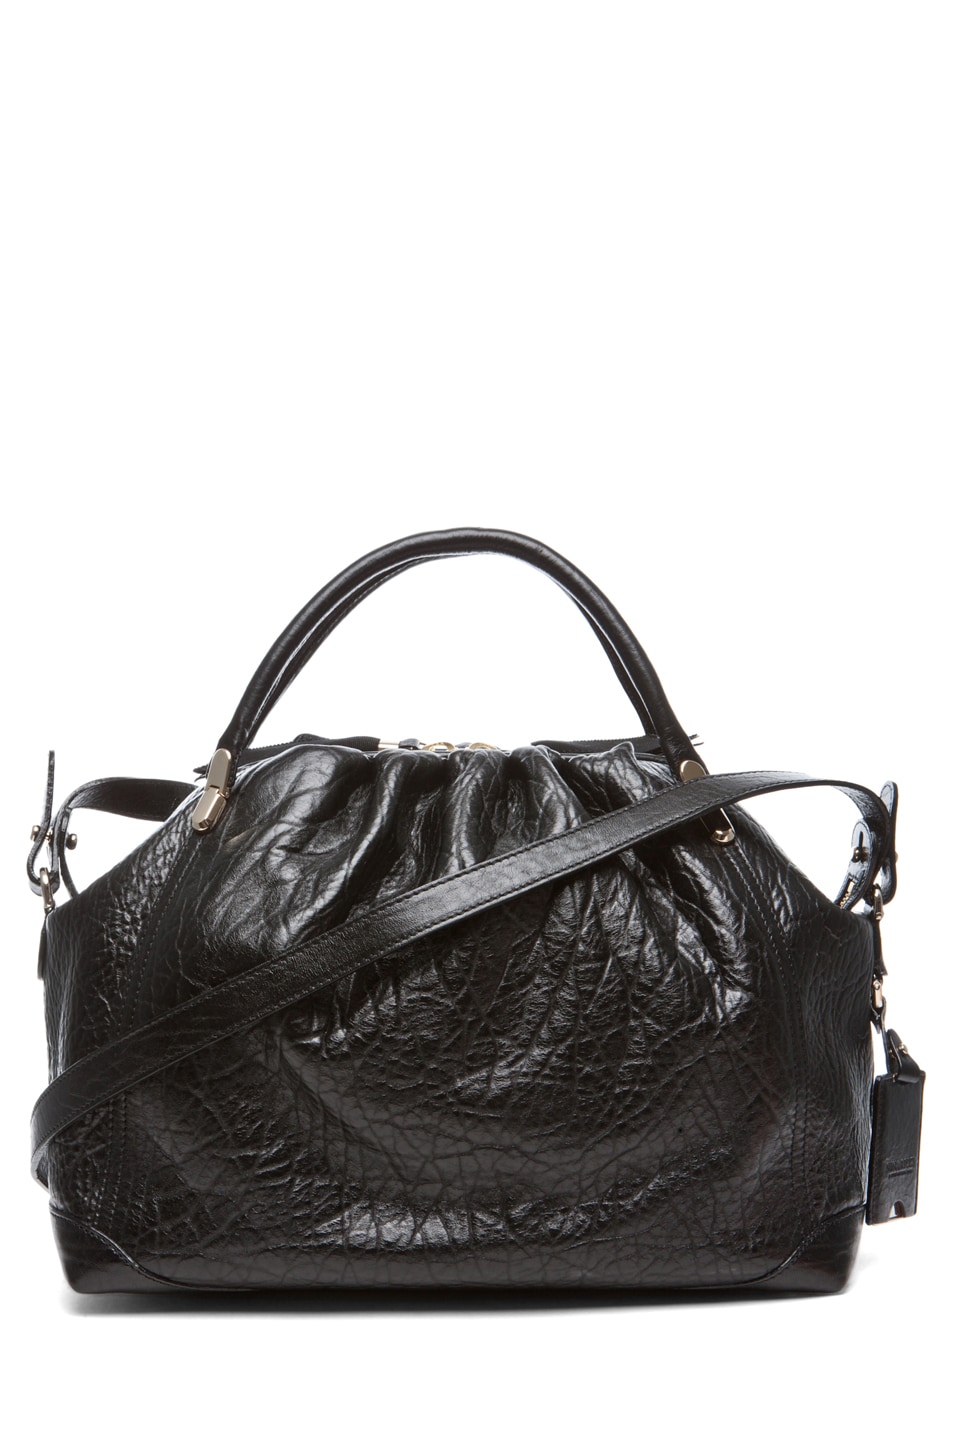 Image 1 of Nina Ricci La Rue Sac Medium Handbag in Black